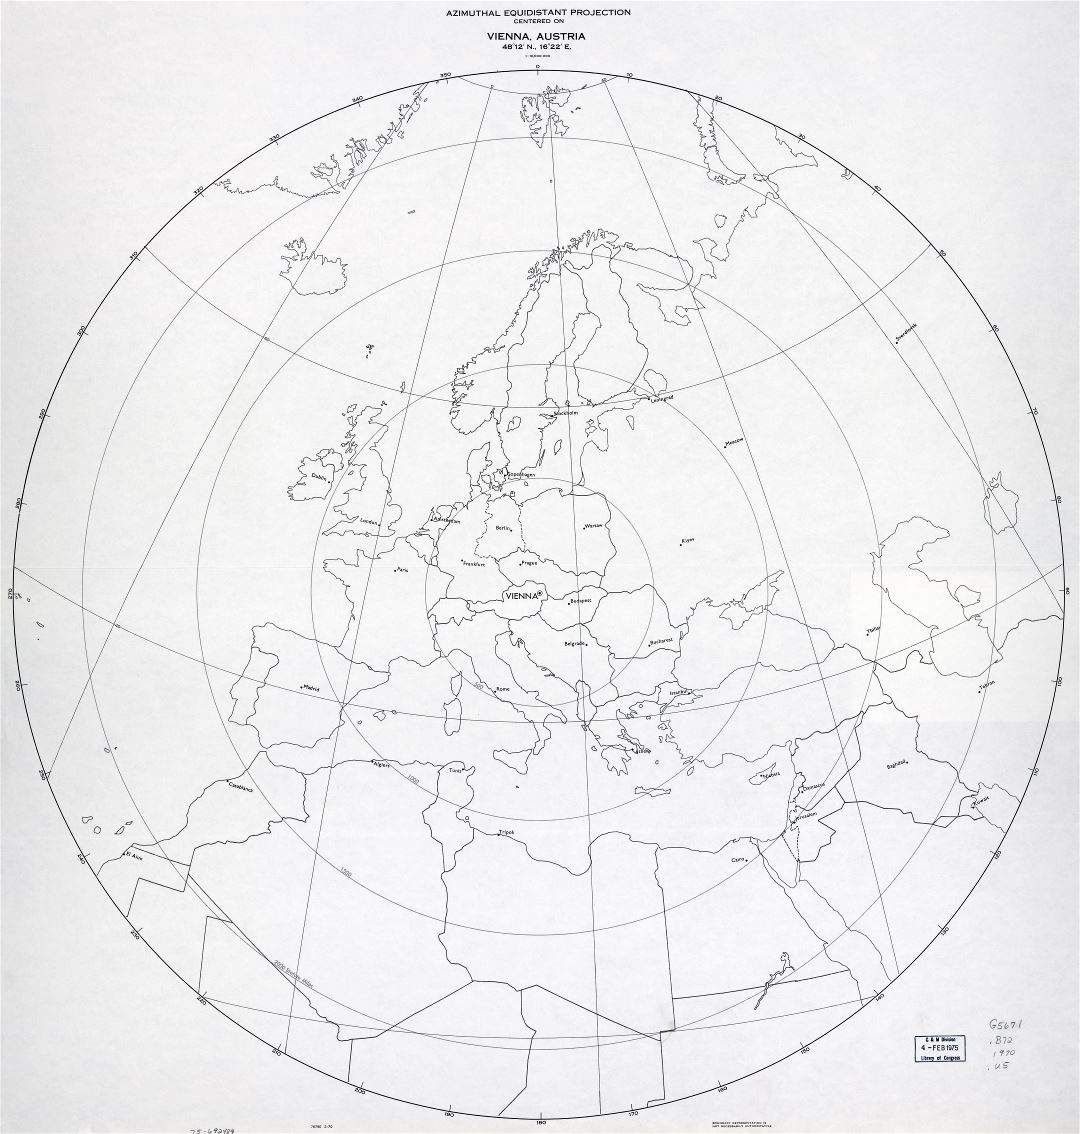 A gran escala detalle azimutal equidistante proyección cartográfica centrada en Viena, Austria - 1970